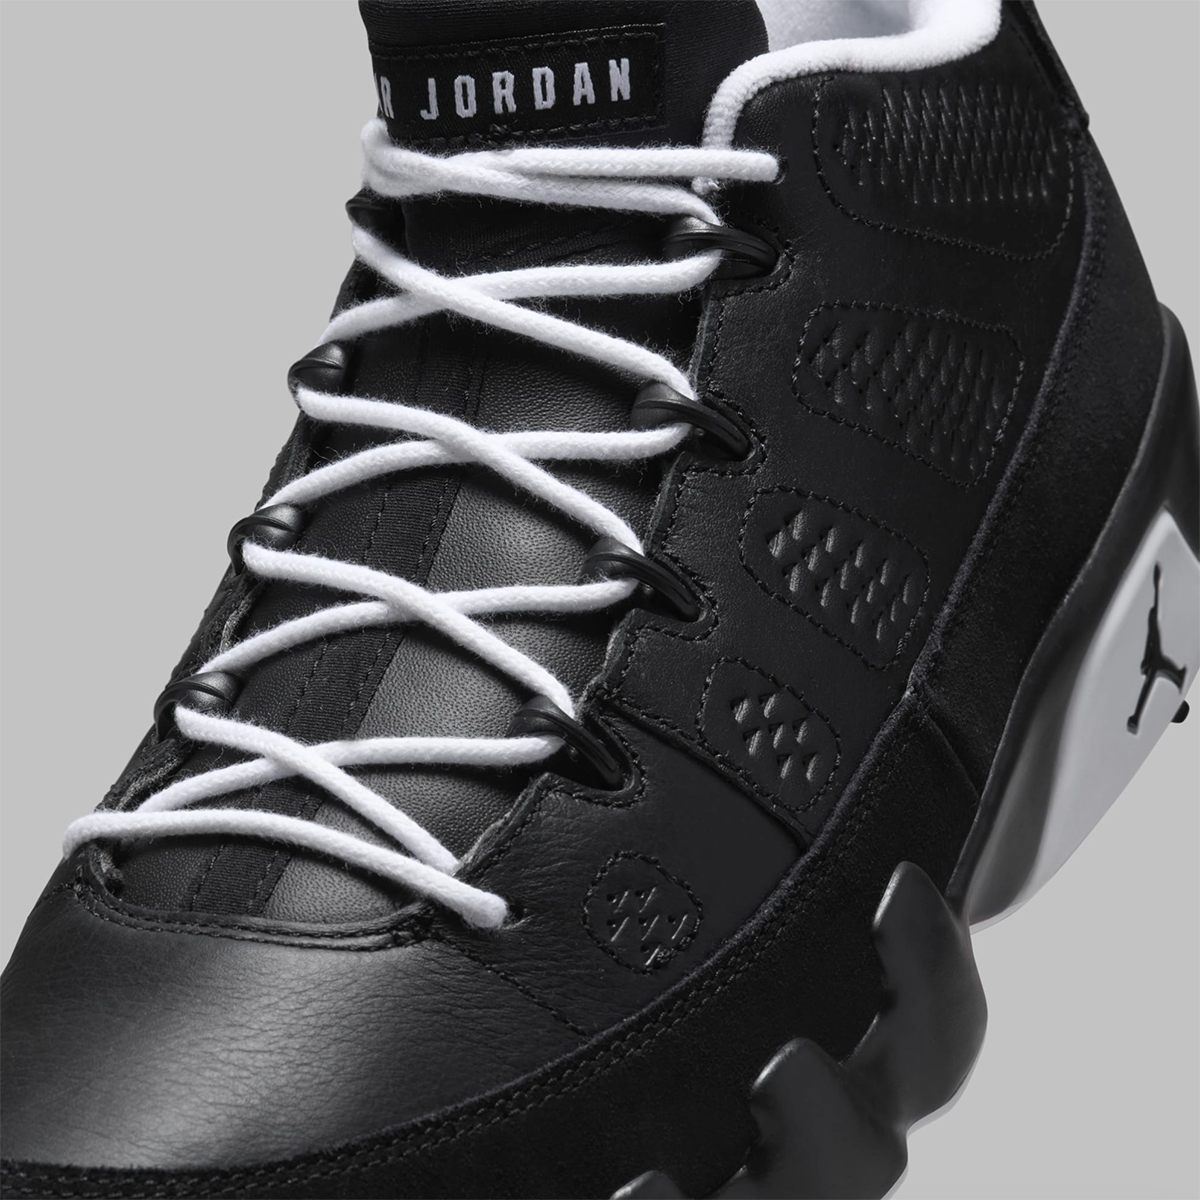 Air Jordan 9 Golf Barons Release Date 7